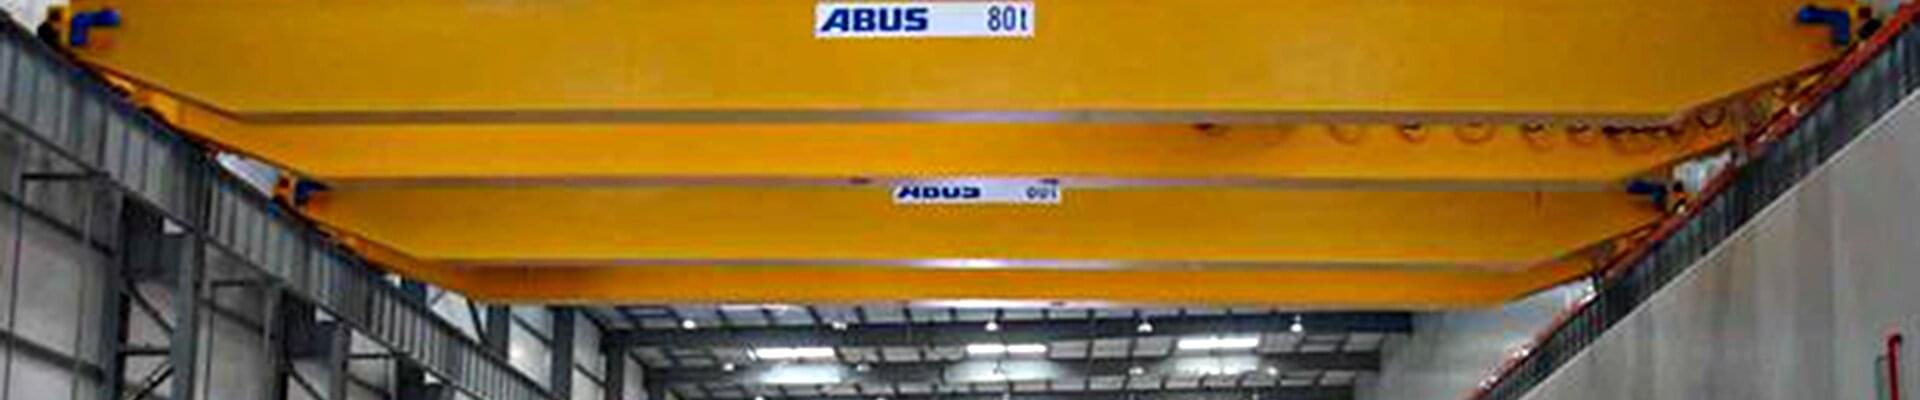 ABUS Zweiträgerlaufkrane in der Firma Chart Industries Inc.